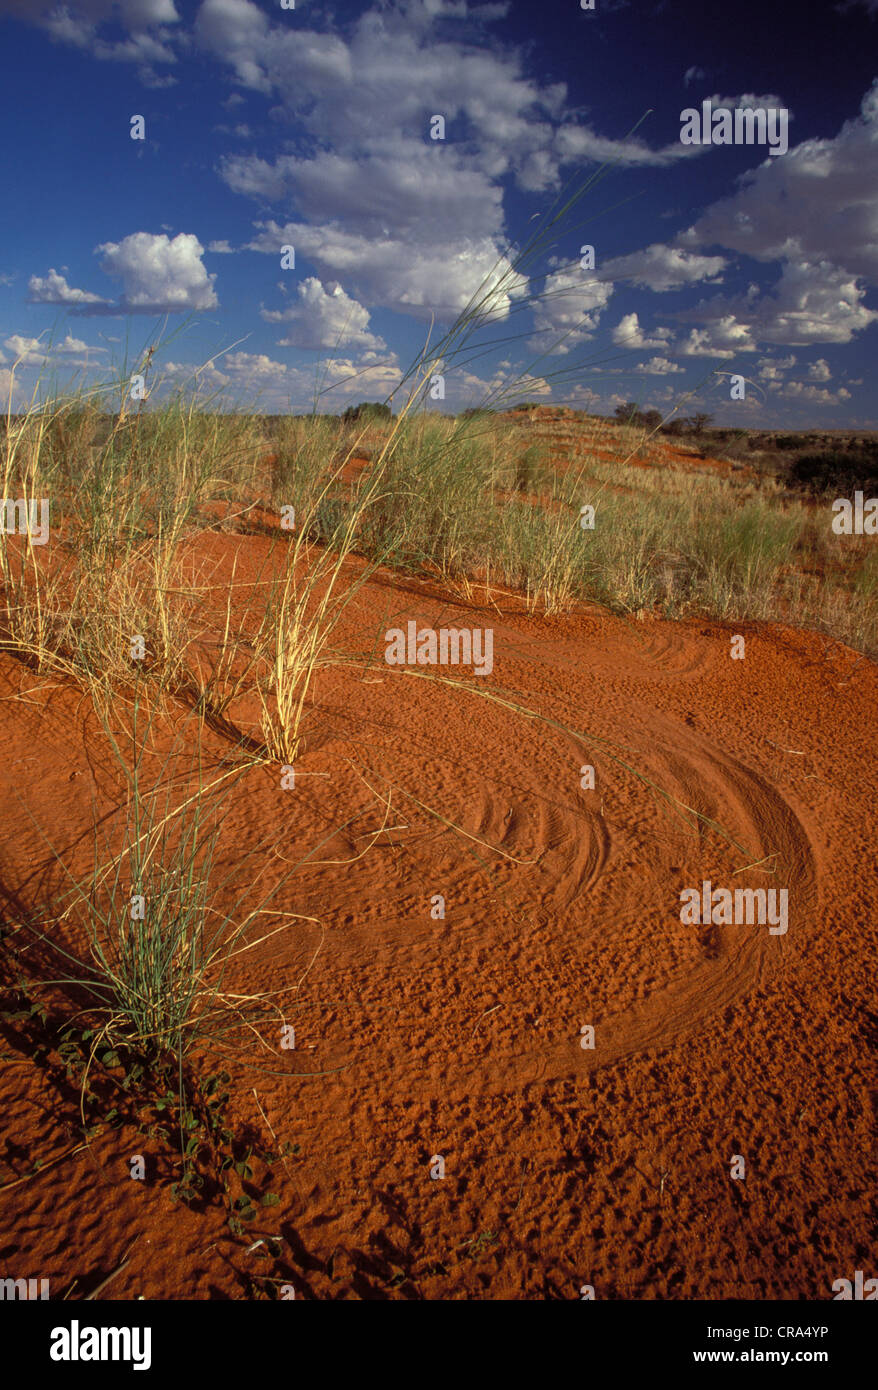 Kalahari Szene, Dune Ridge, Wind geblasen Gräser Pattern in Sand, Kgalagadi Transfrontier Park, Südafrika, Afrika Stockfoto